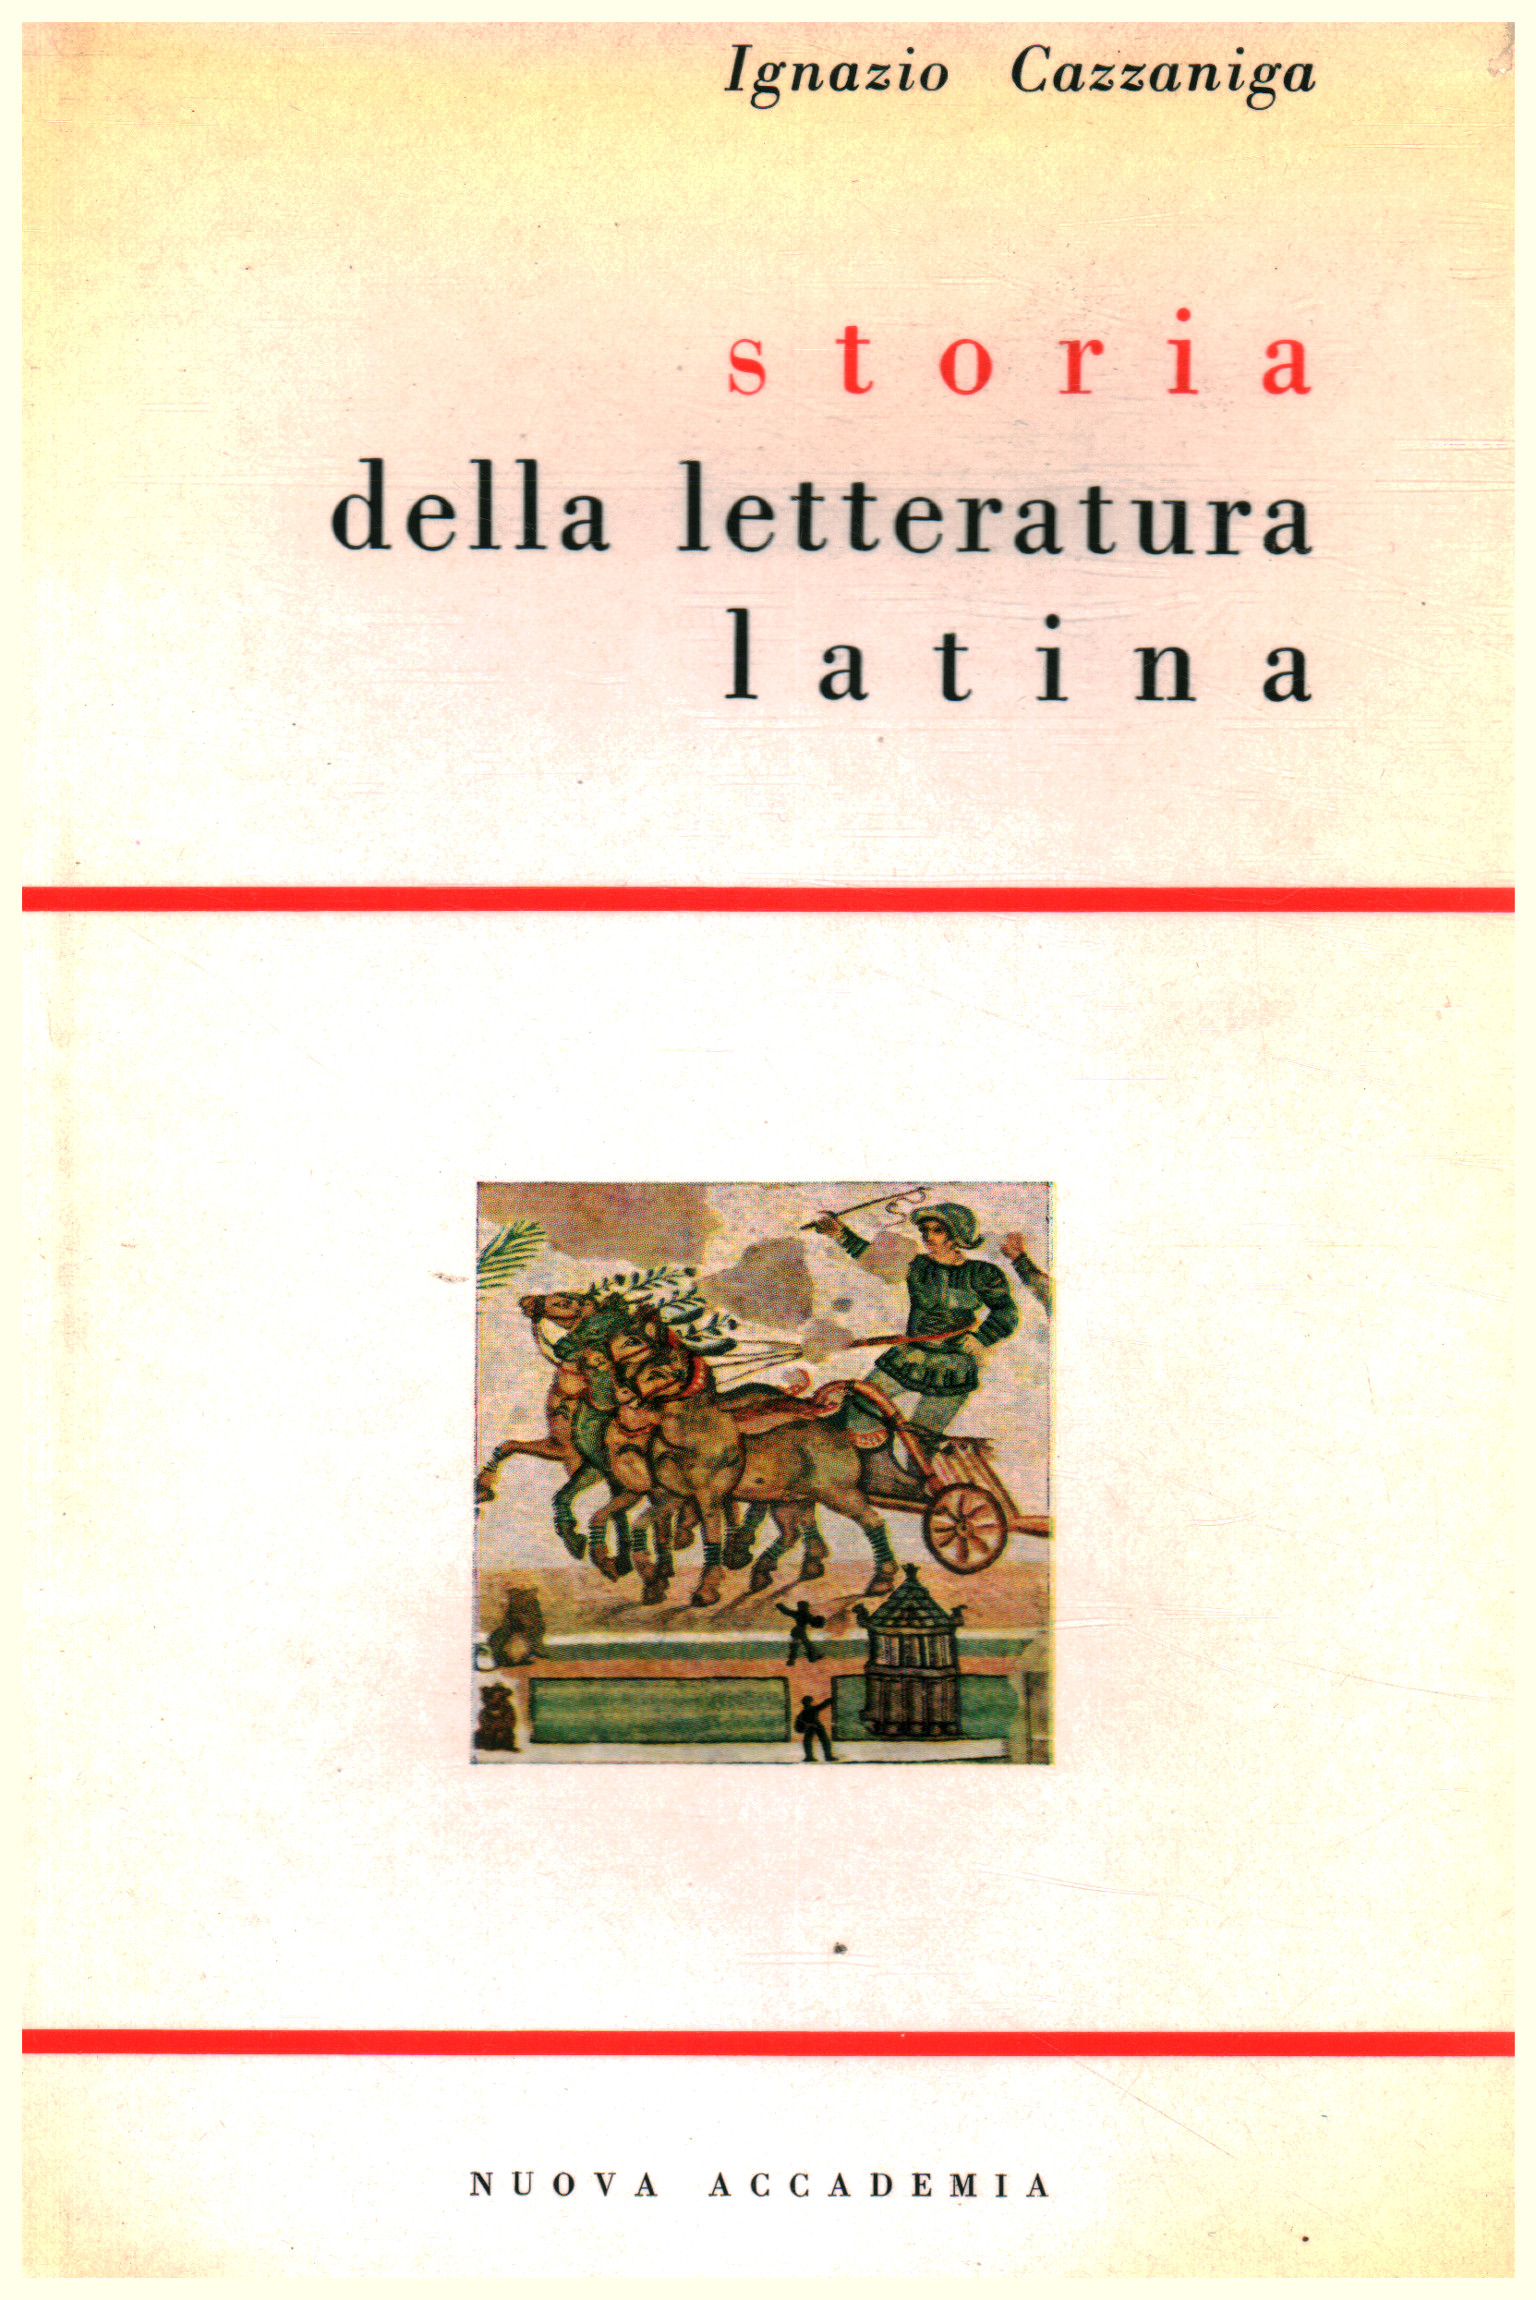 Historia de la literatura latina, Ignazio Cazzaniga